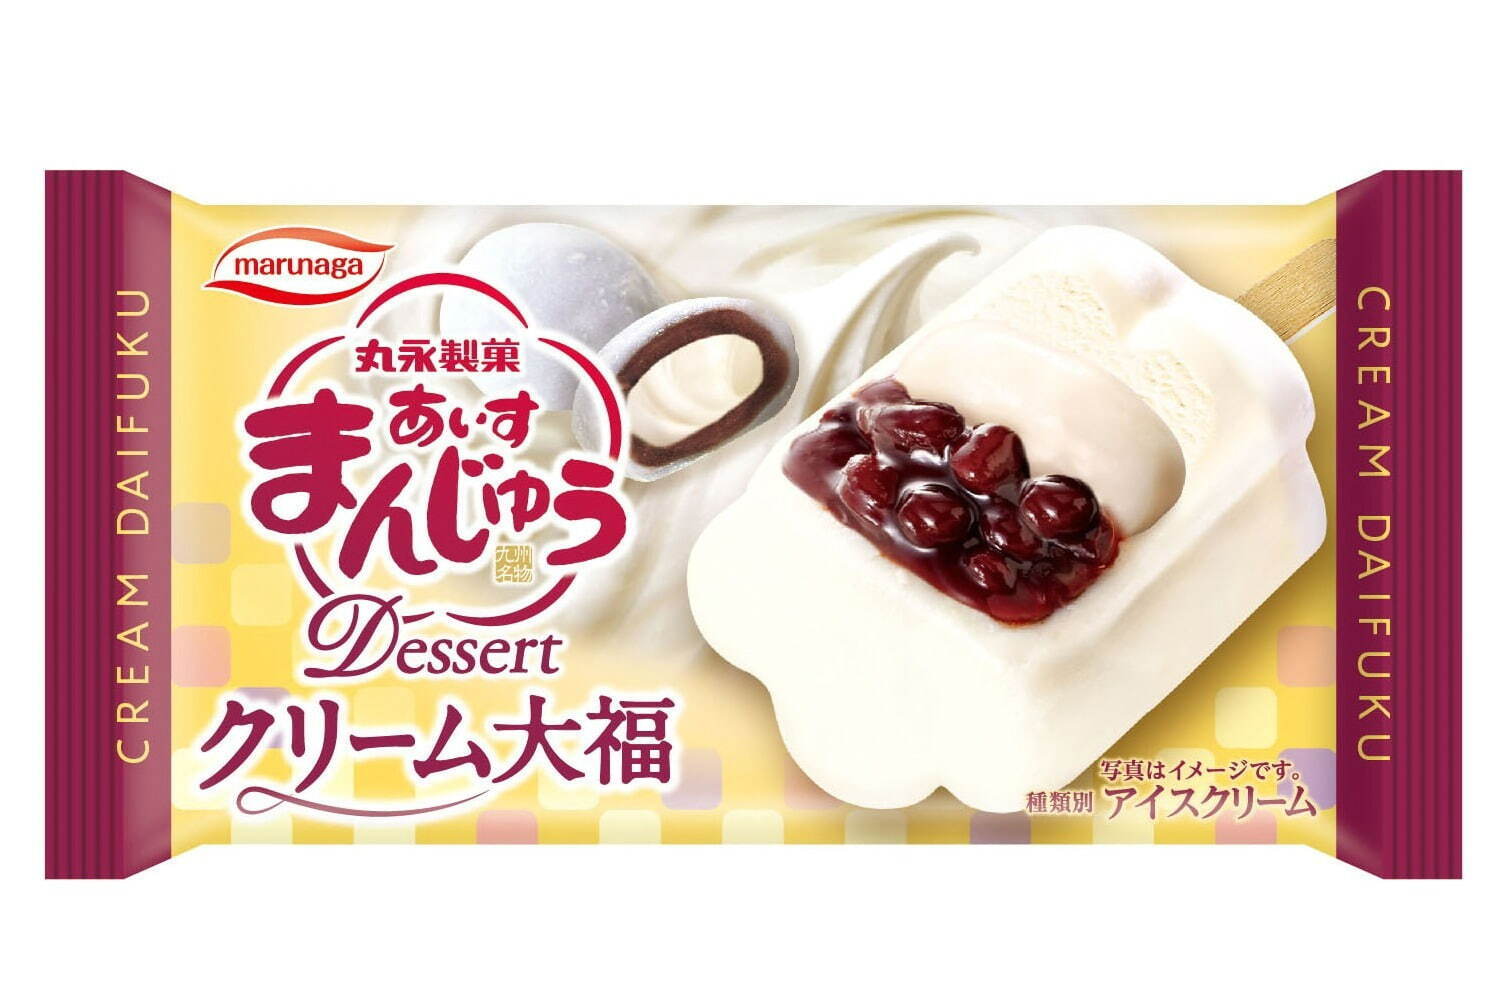 丸永製菓「あいすまんじゅう Dessert クリーム大福」新フレーバー